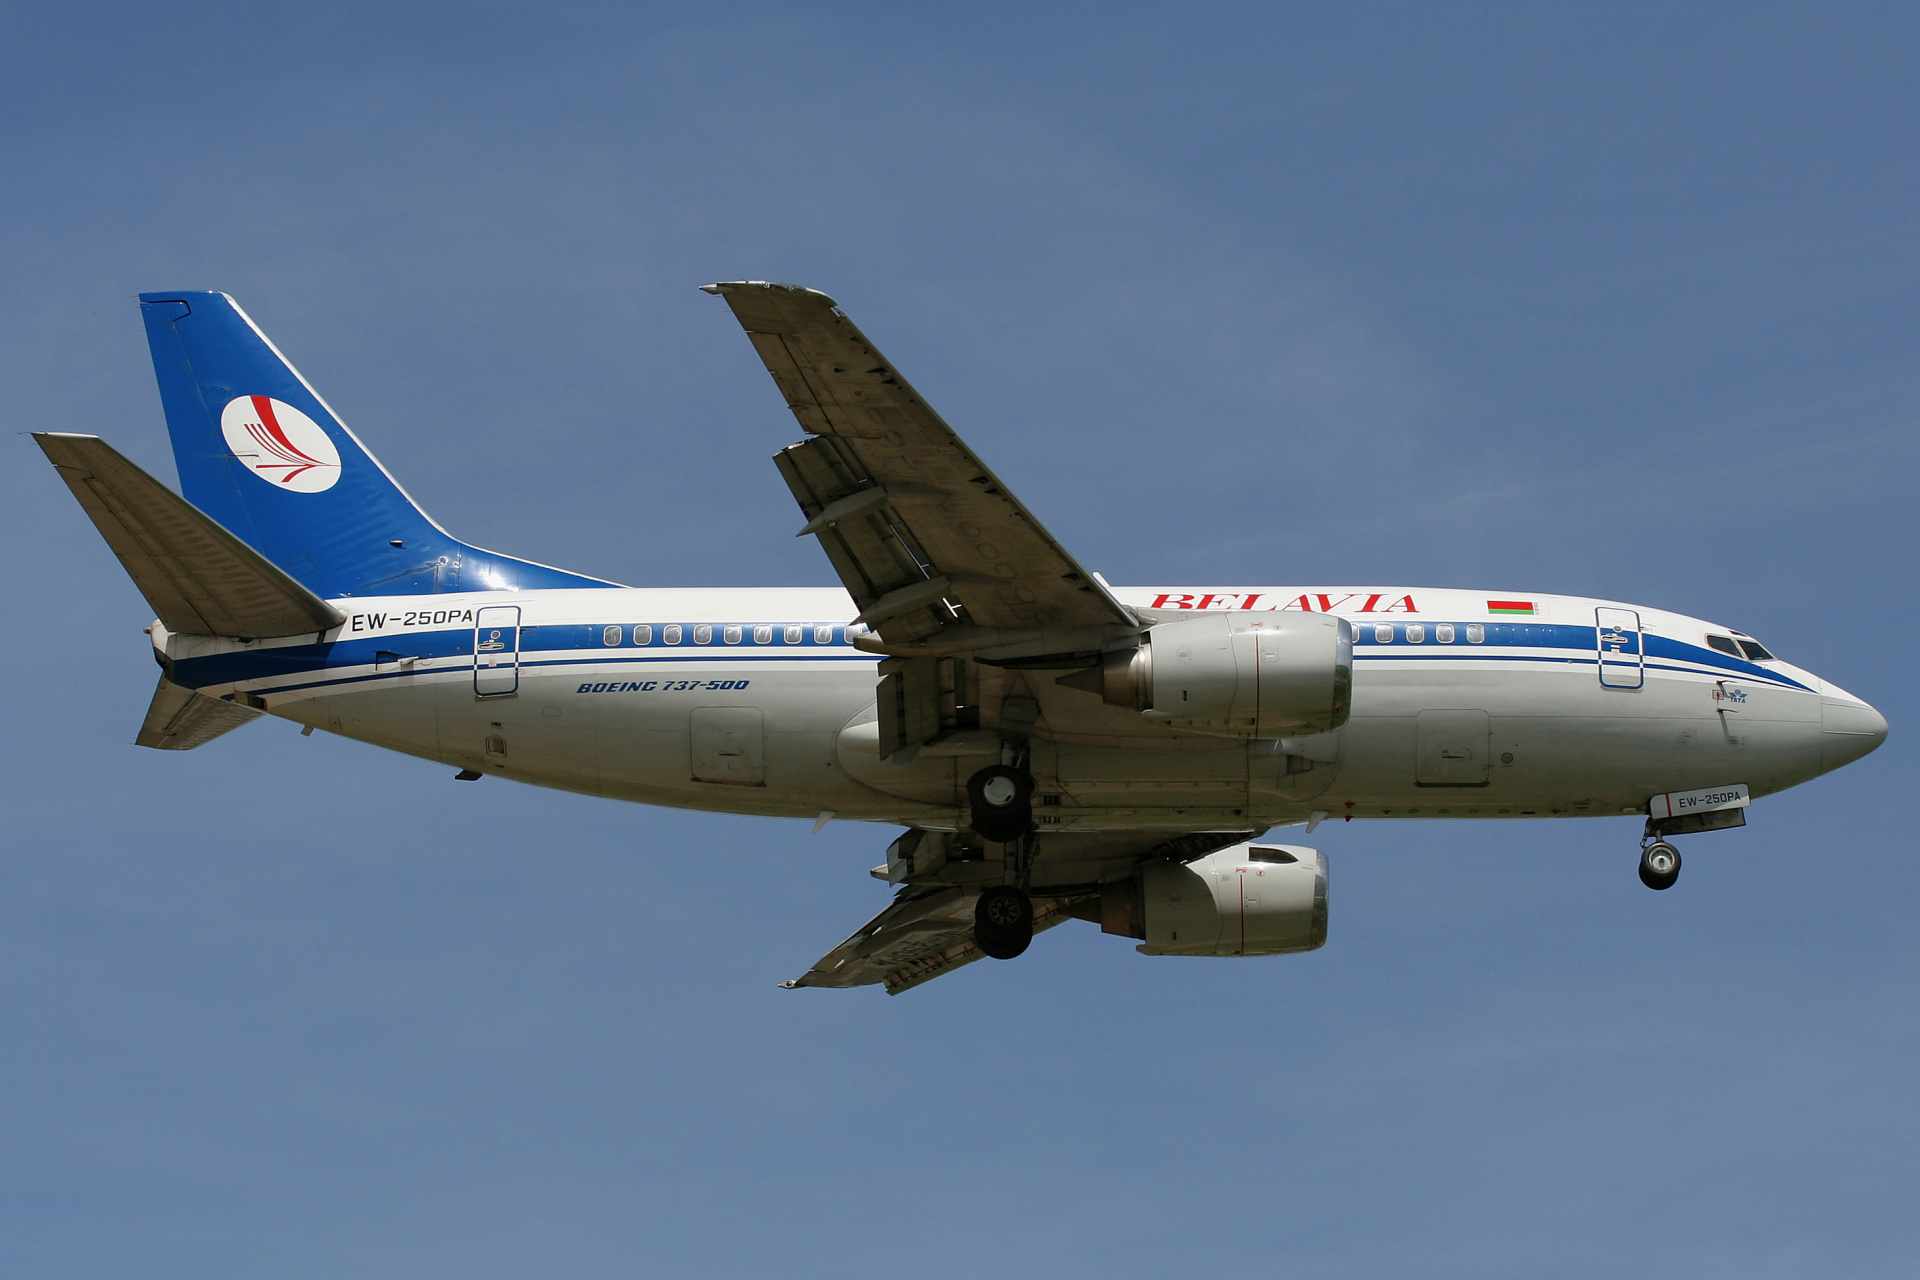 EW-250PA (Aircraft » EPWA Spotting » Boeing 737-500 » Belavia)